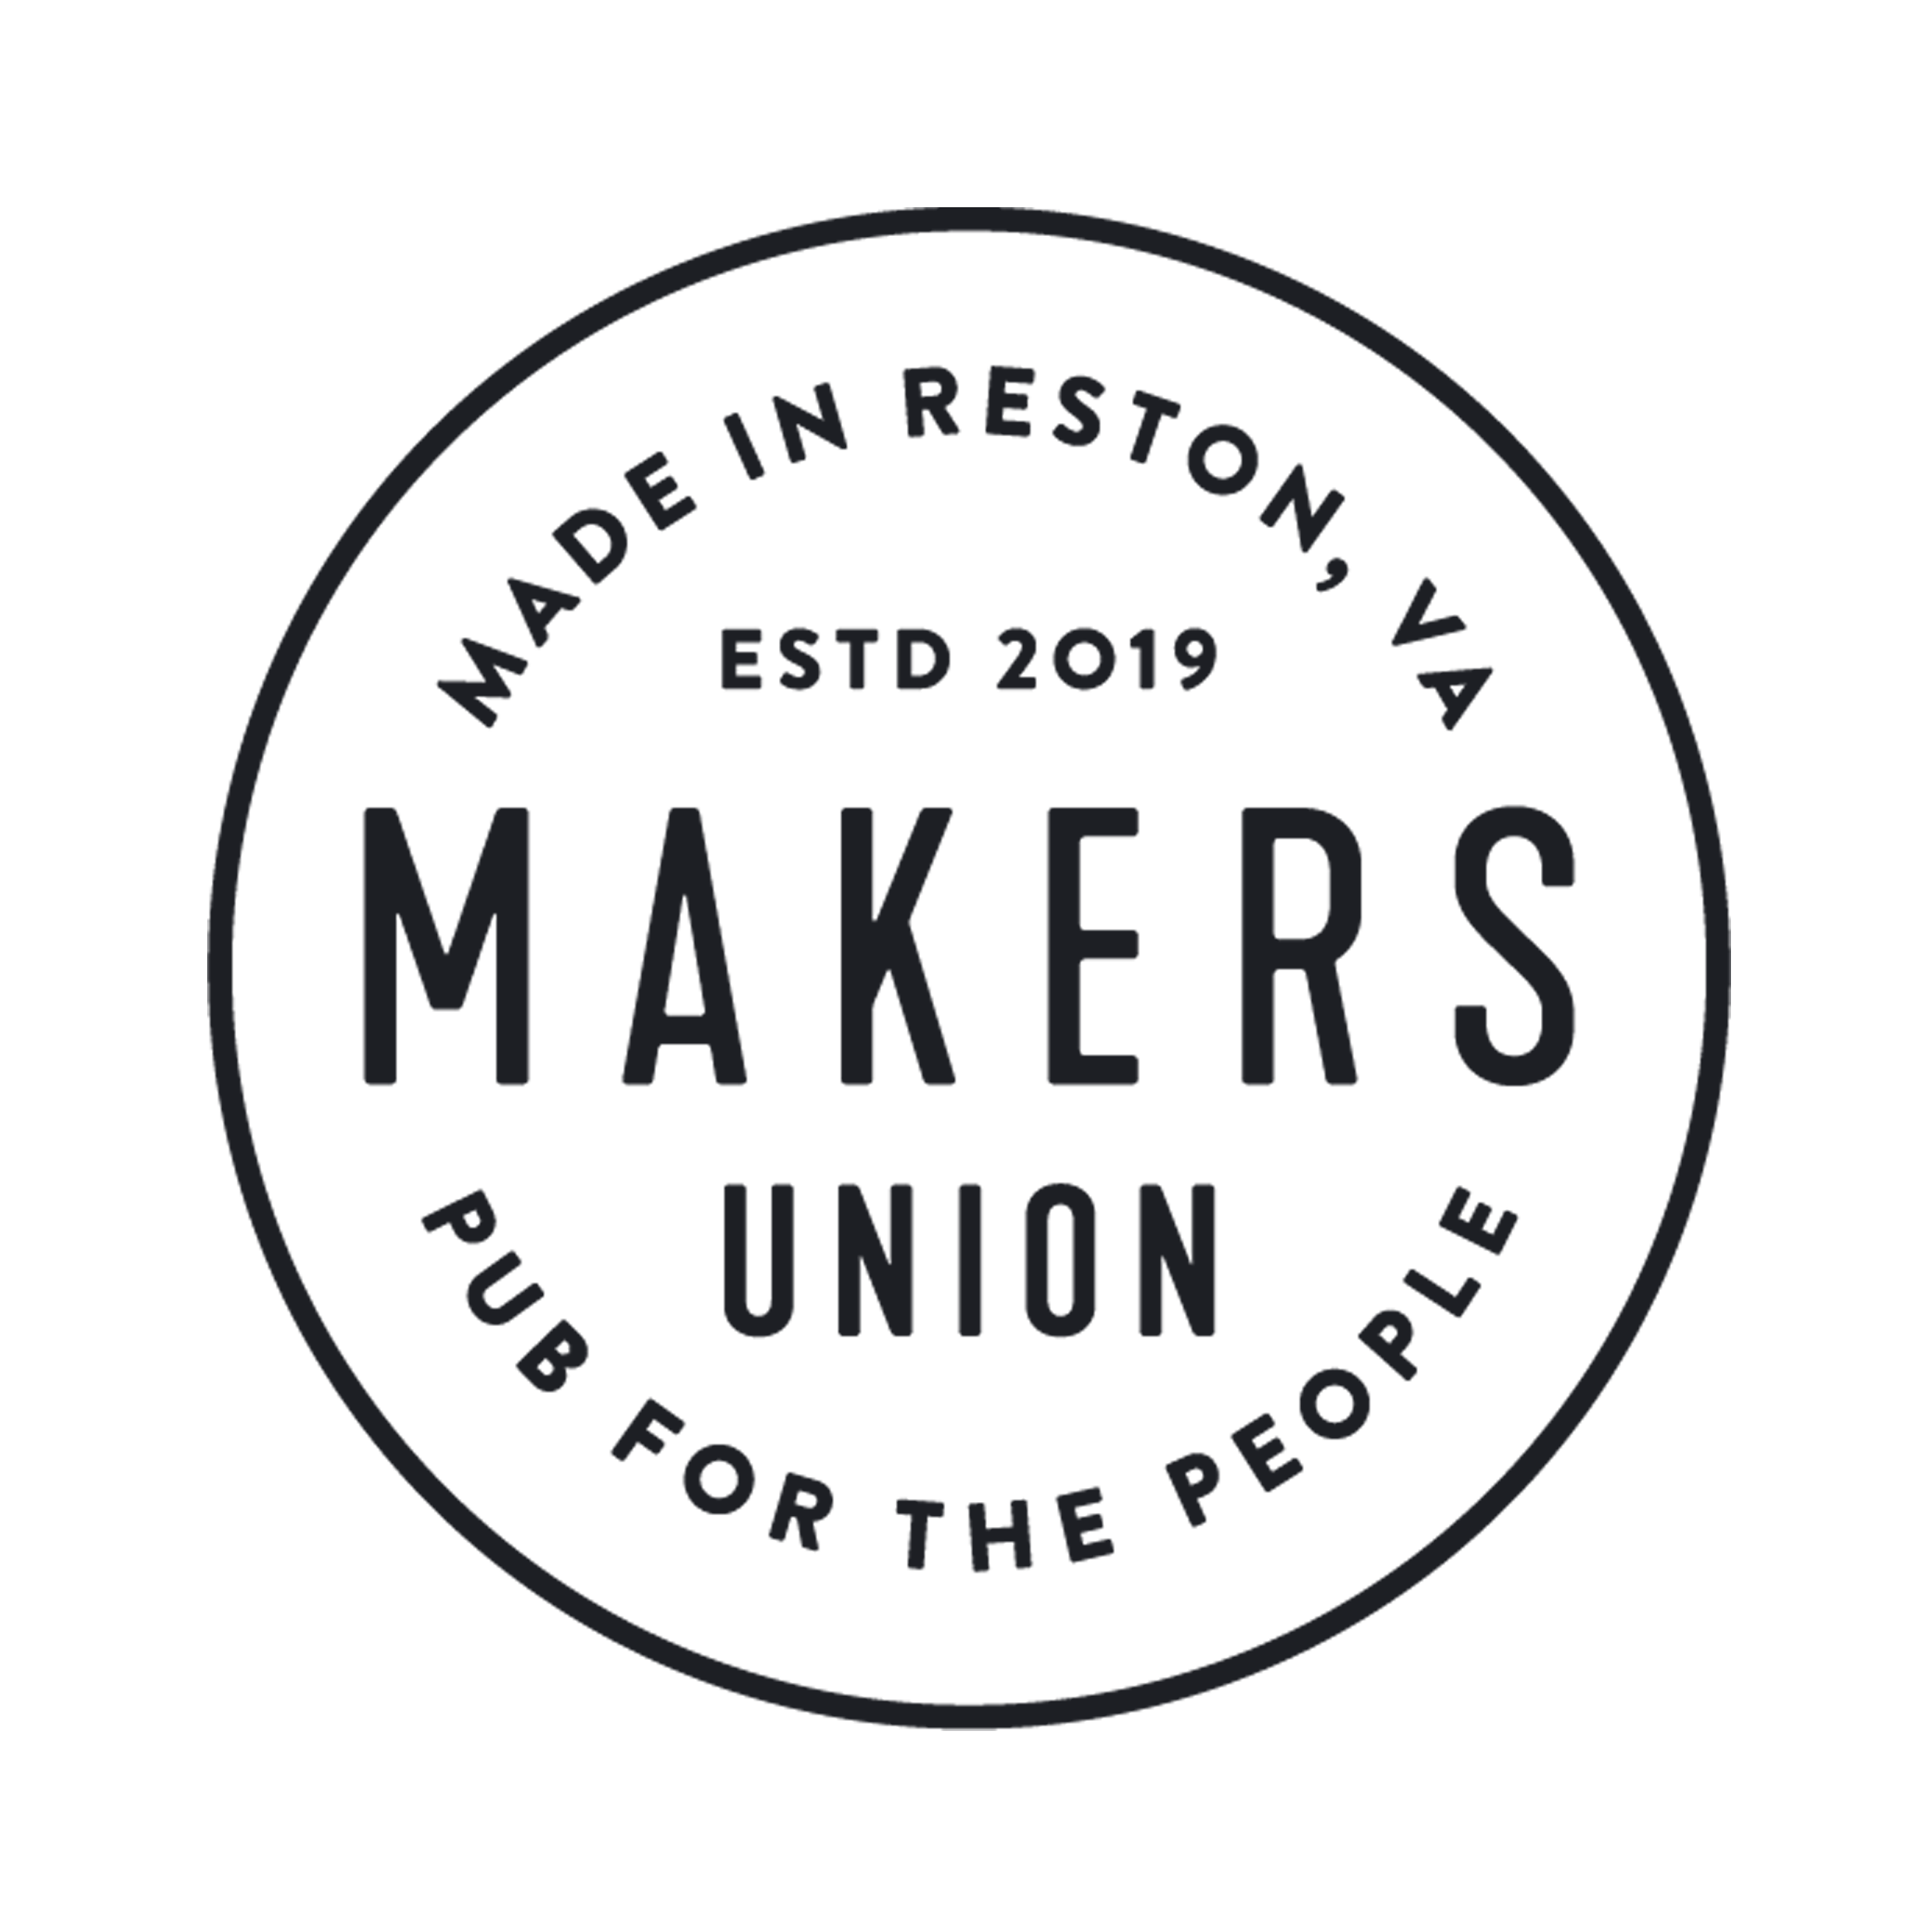 Makers Union Pub